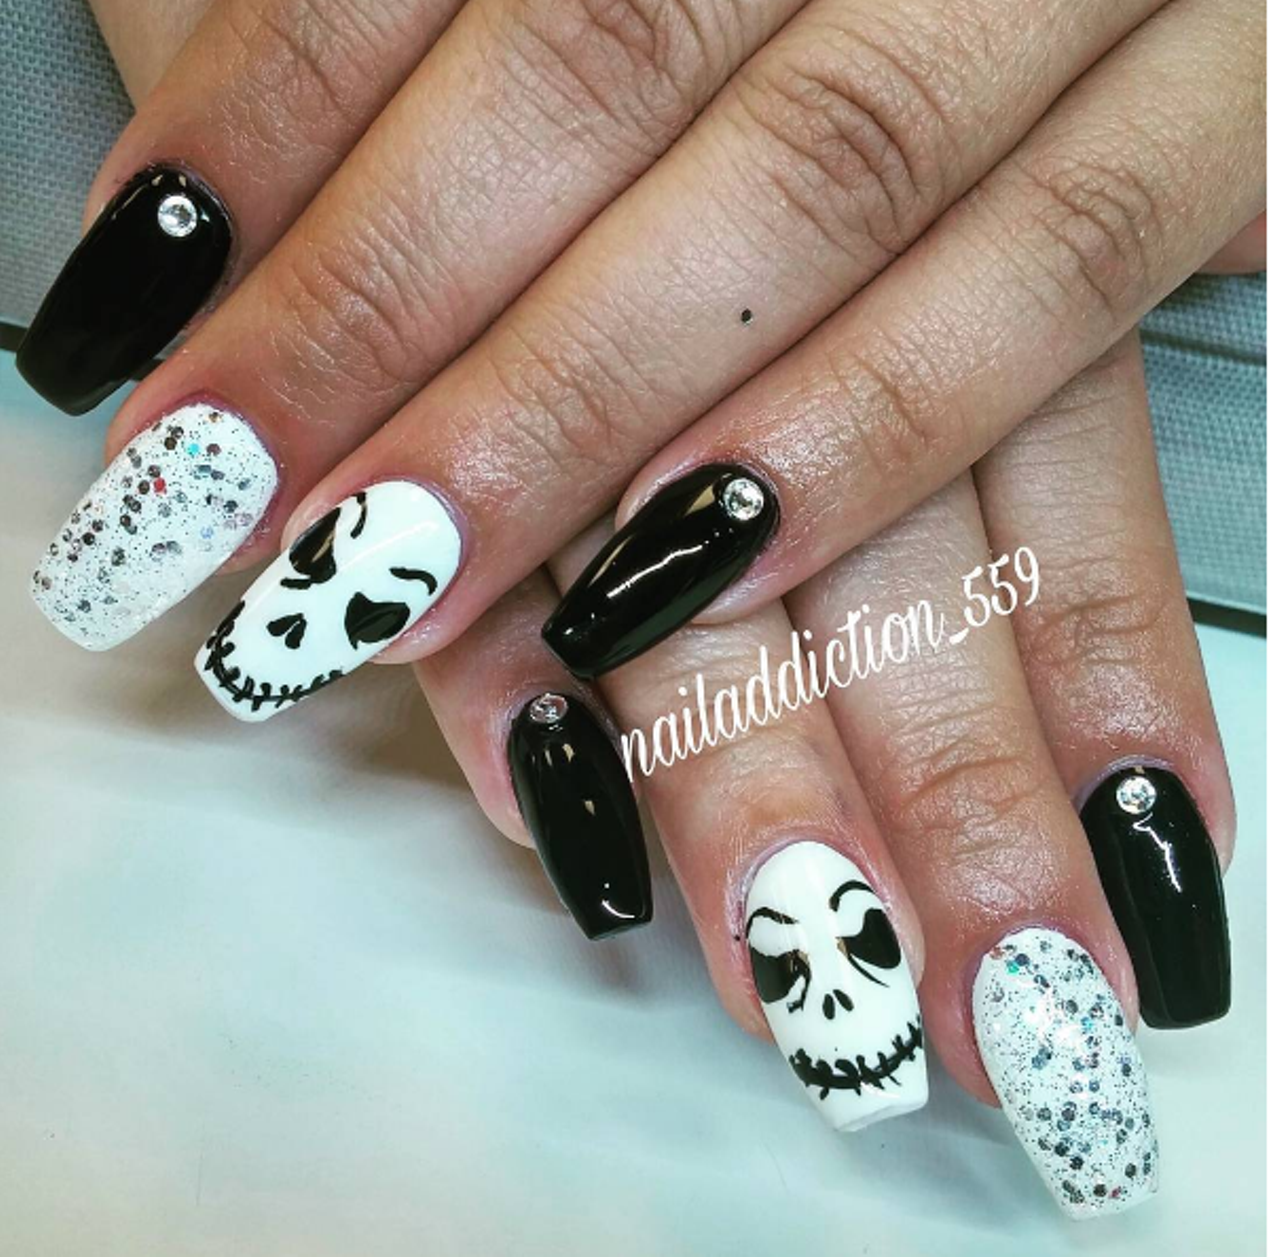 Ghoulish nails by @nailaddiction_559